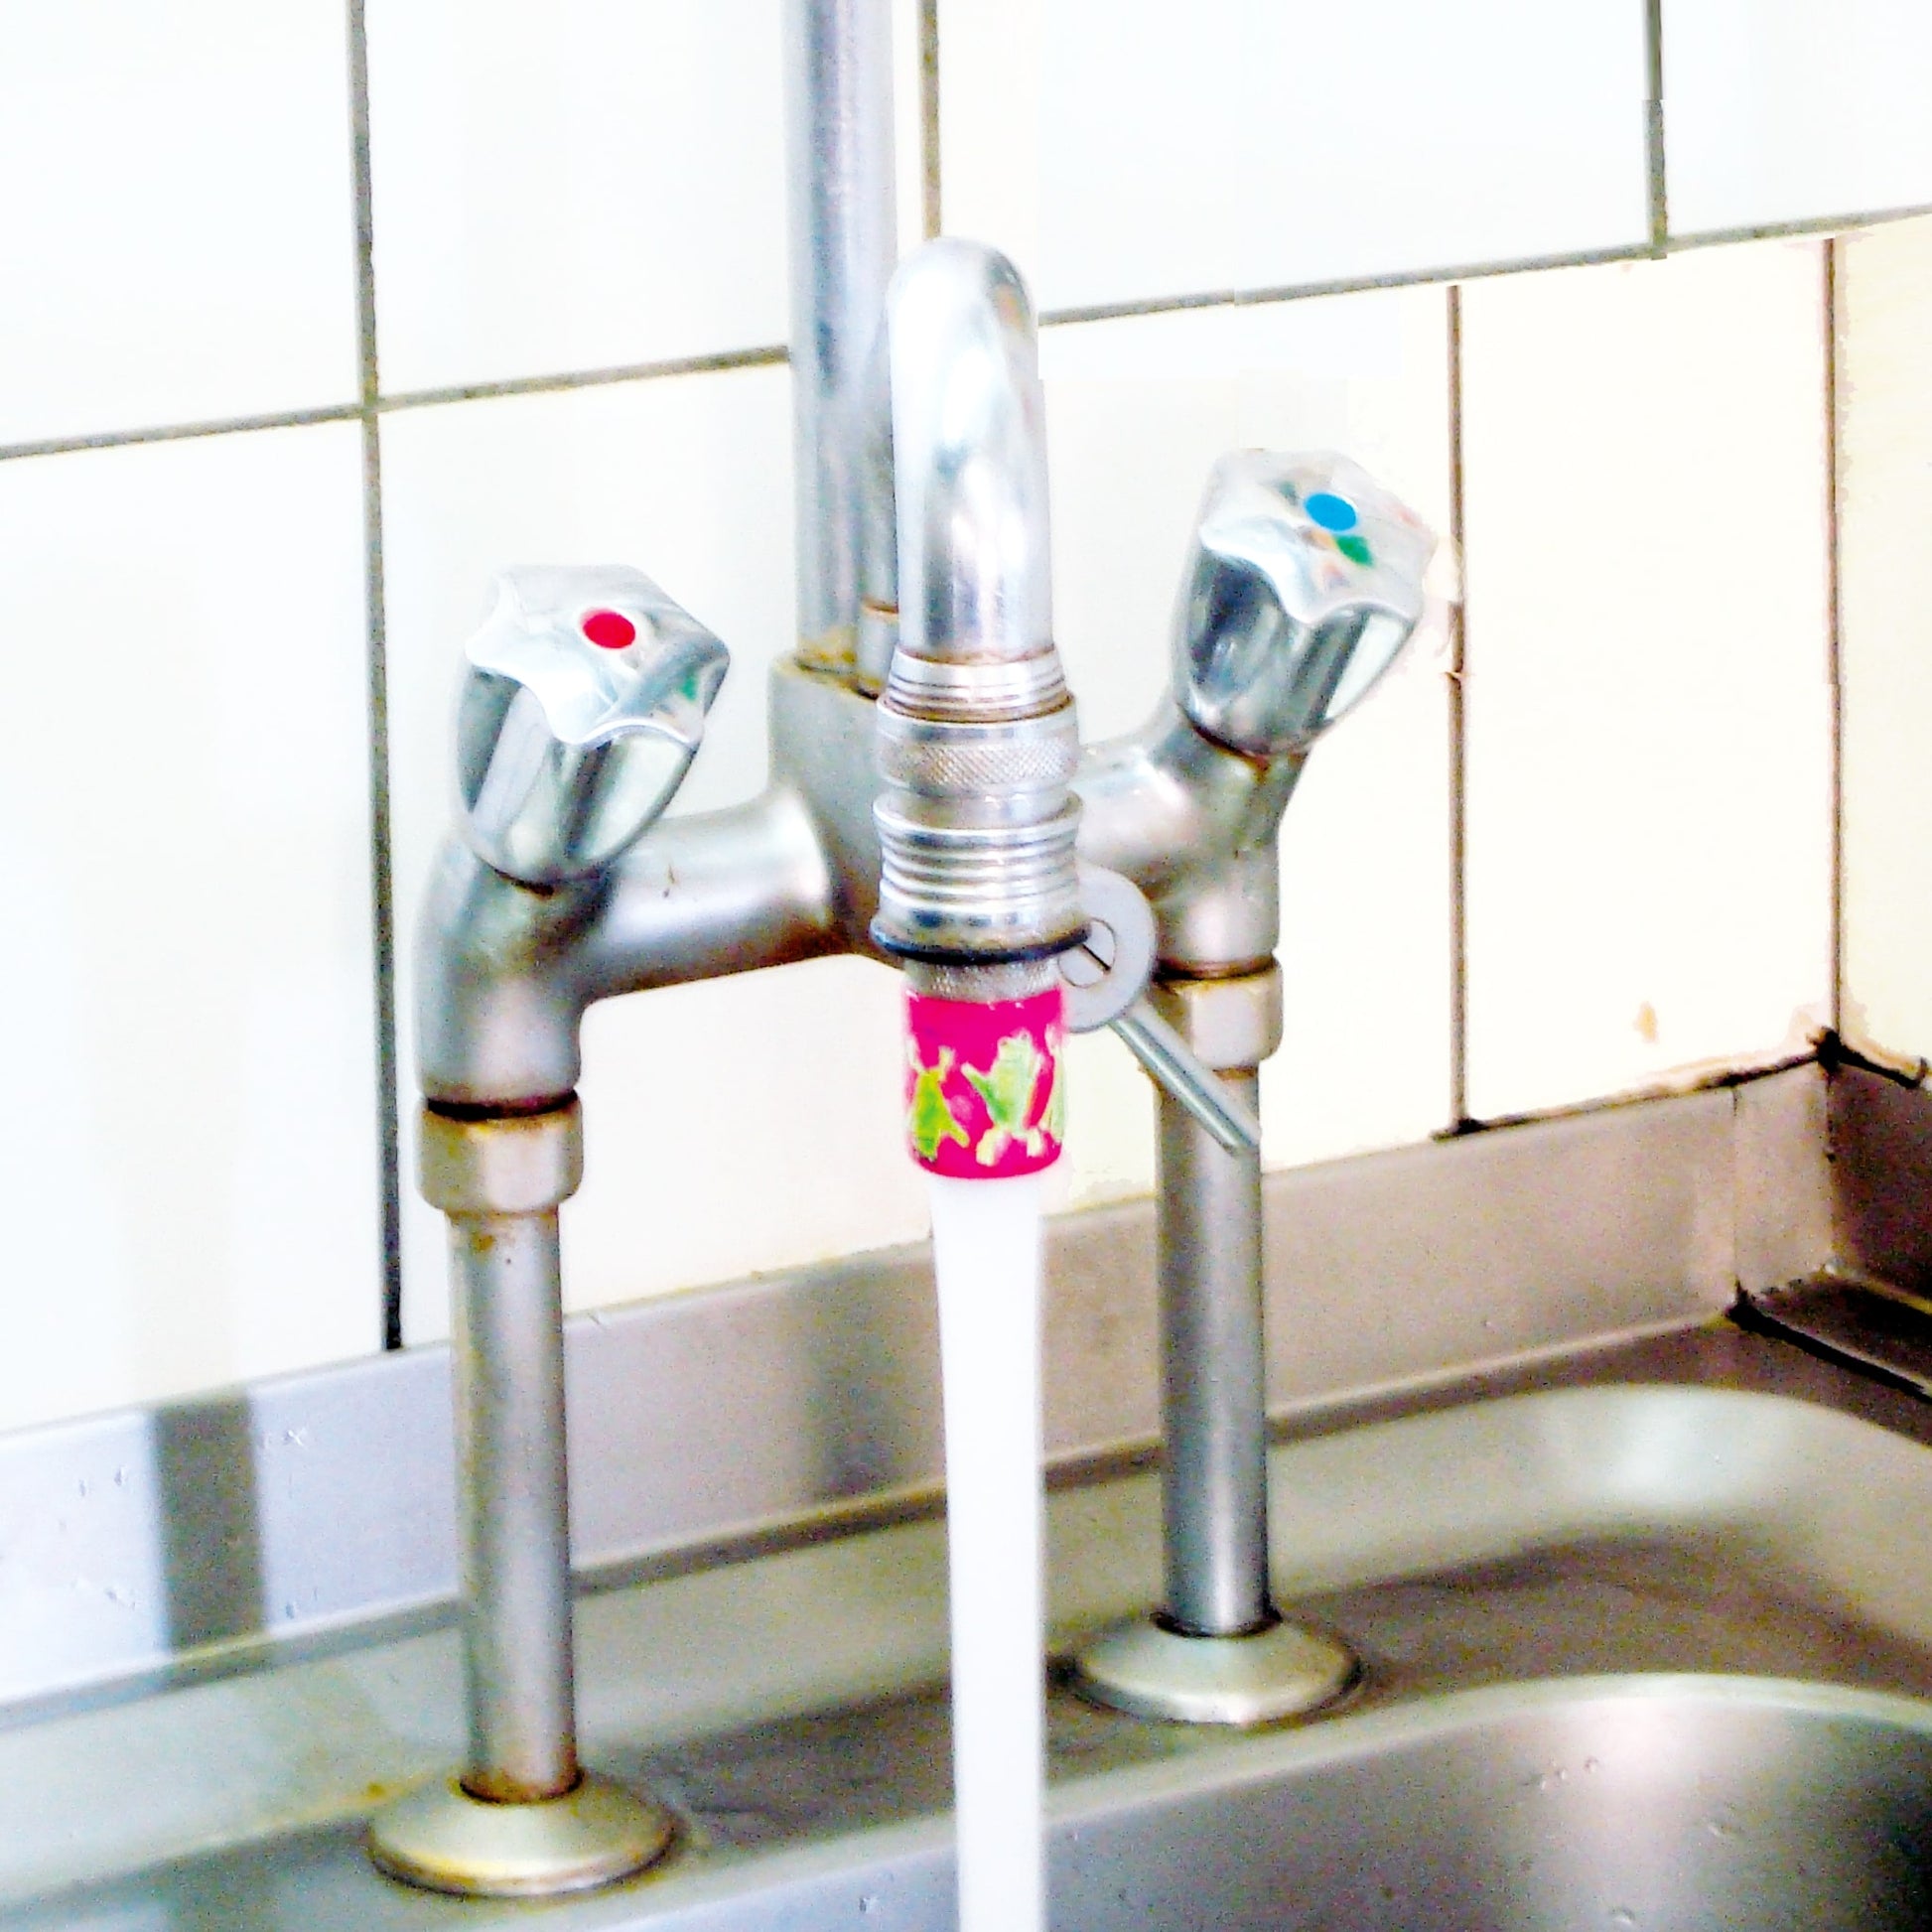 pinkfarbener Gastro-Adapter an einem Grossküchen-Wasserhahn, angeschraubt dank Gastro-Adapter